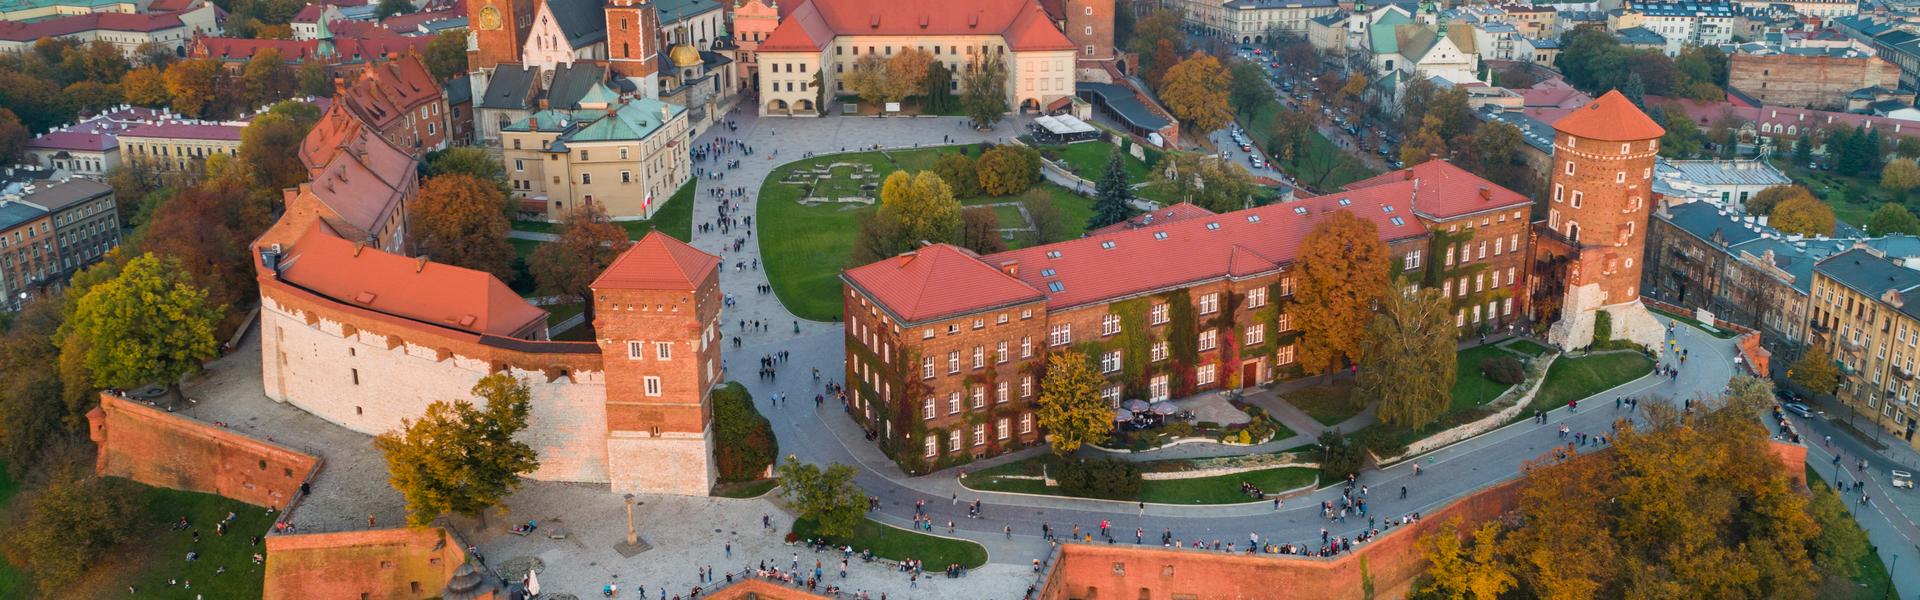 bird’s eye view of the Wawel Royal Castle